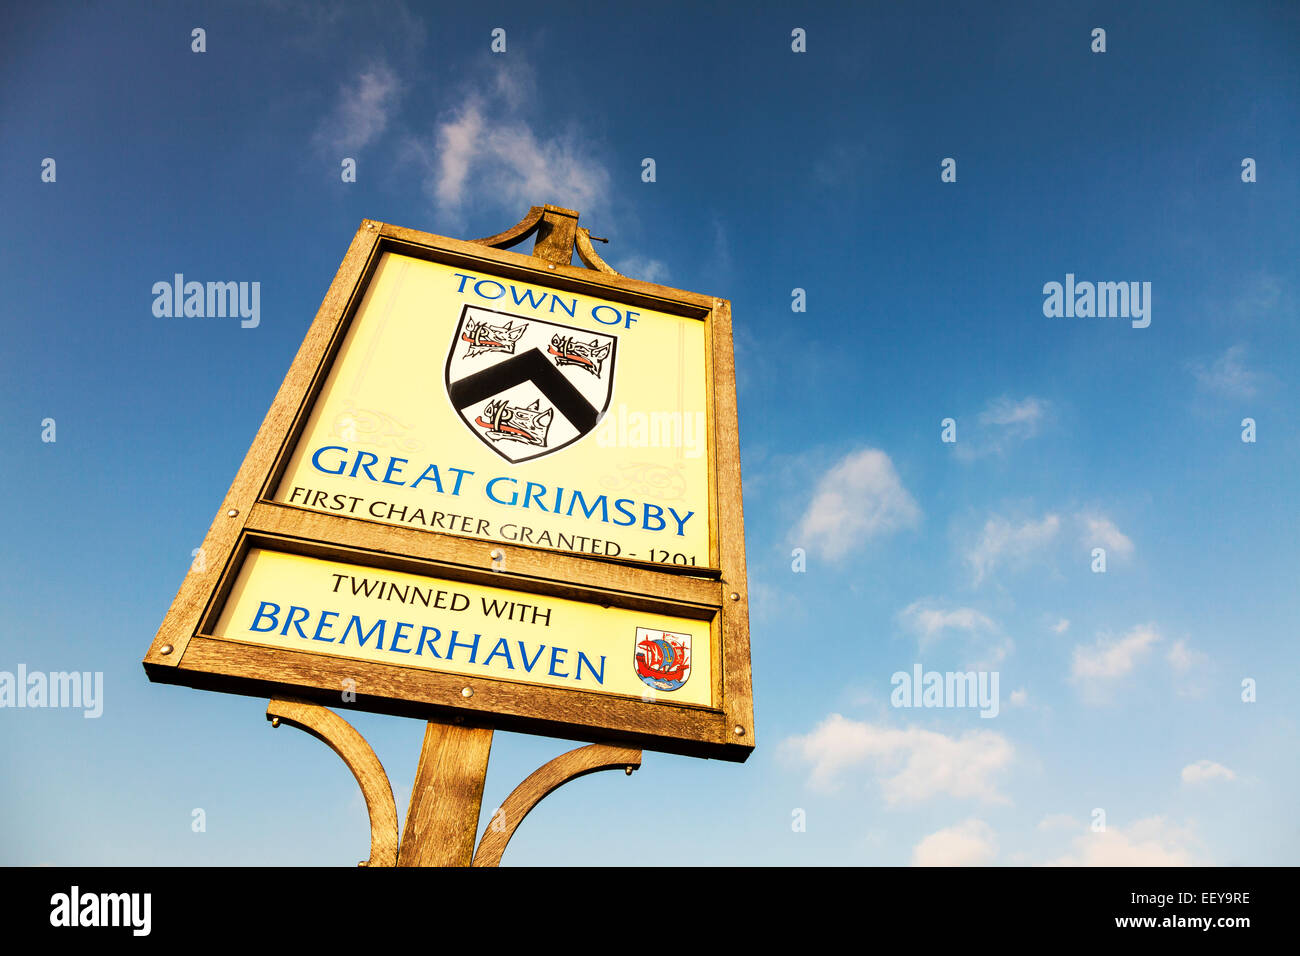 Großen Grimsby Town Willkommens-Schild am Straßenrand Einfahrt twinned mit Bremerhaven Lincolnshire Humberside UK England Stockfoto